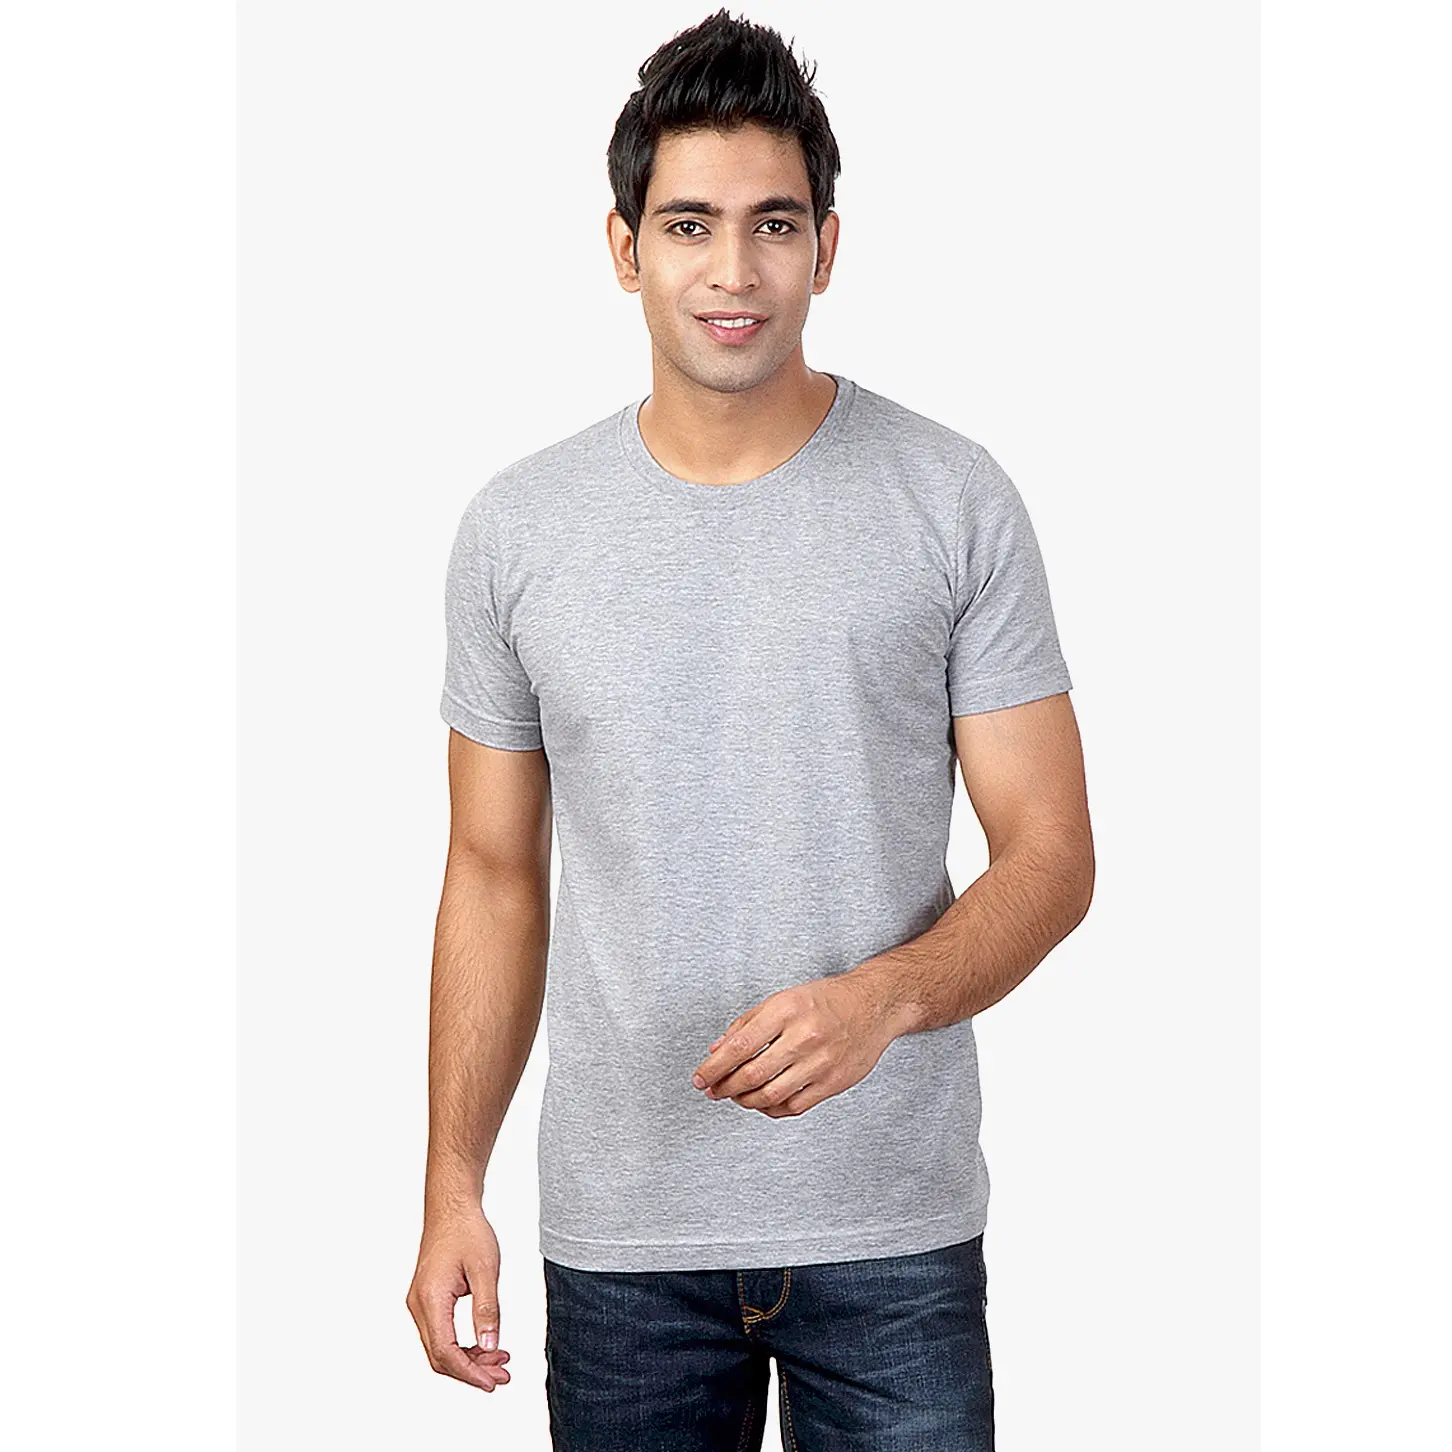 Herren Slim Fit Grau T-Shirts Großeinkauf OEM Kauf Plain Blank T-Shirt Modische Herren bekleidung Hersteller